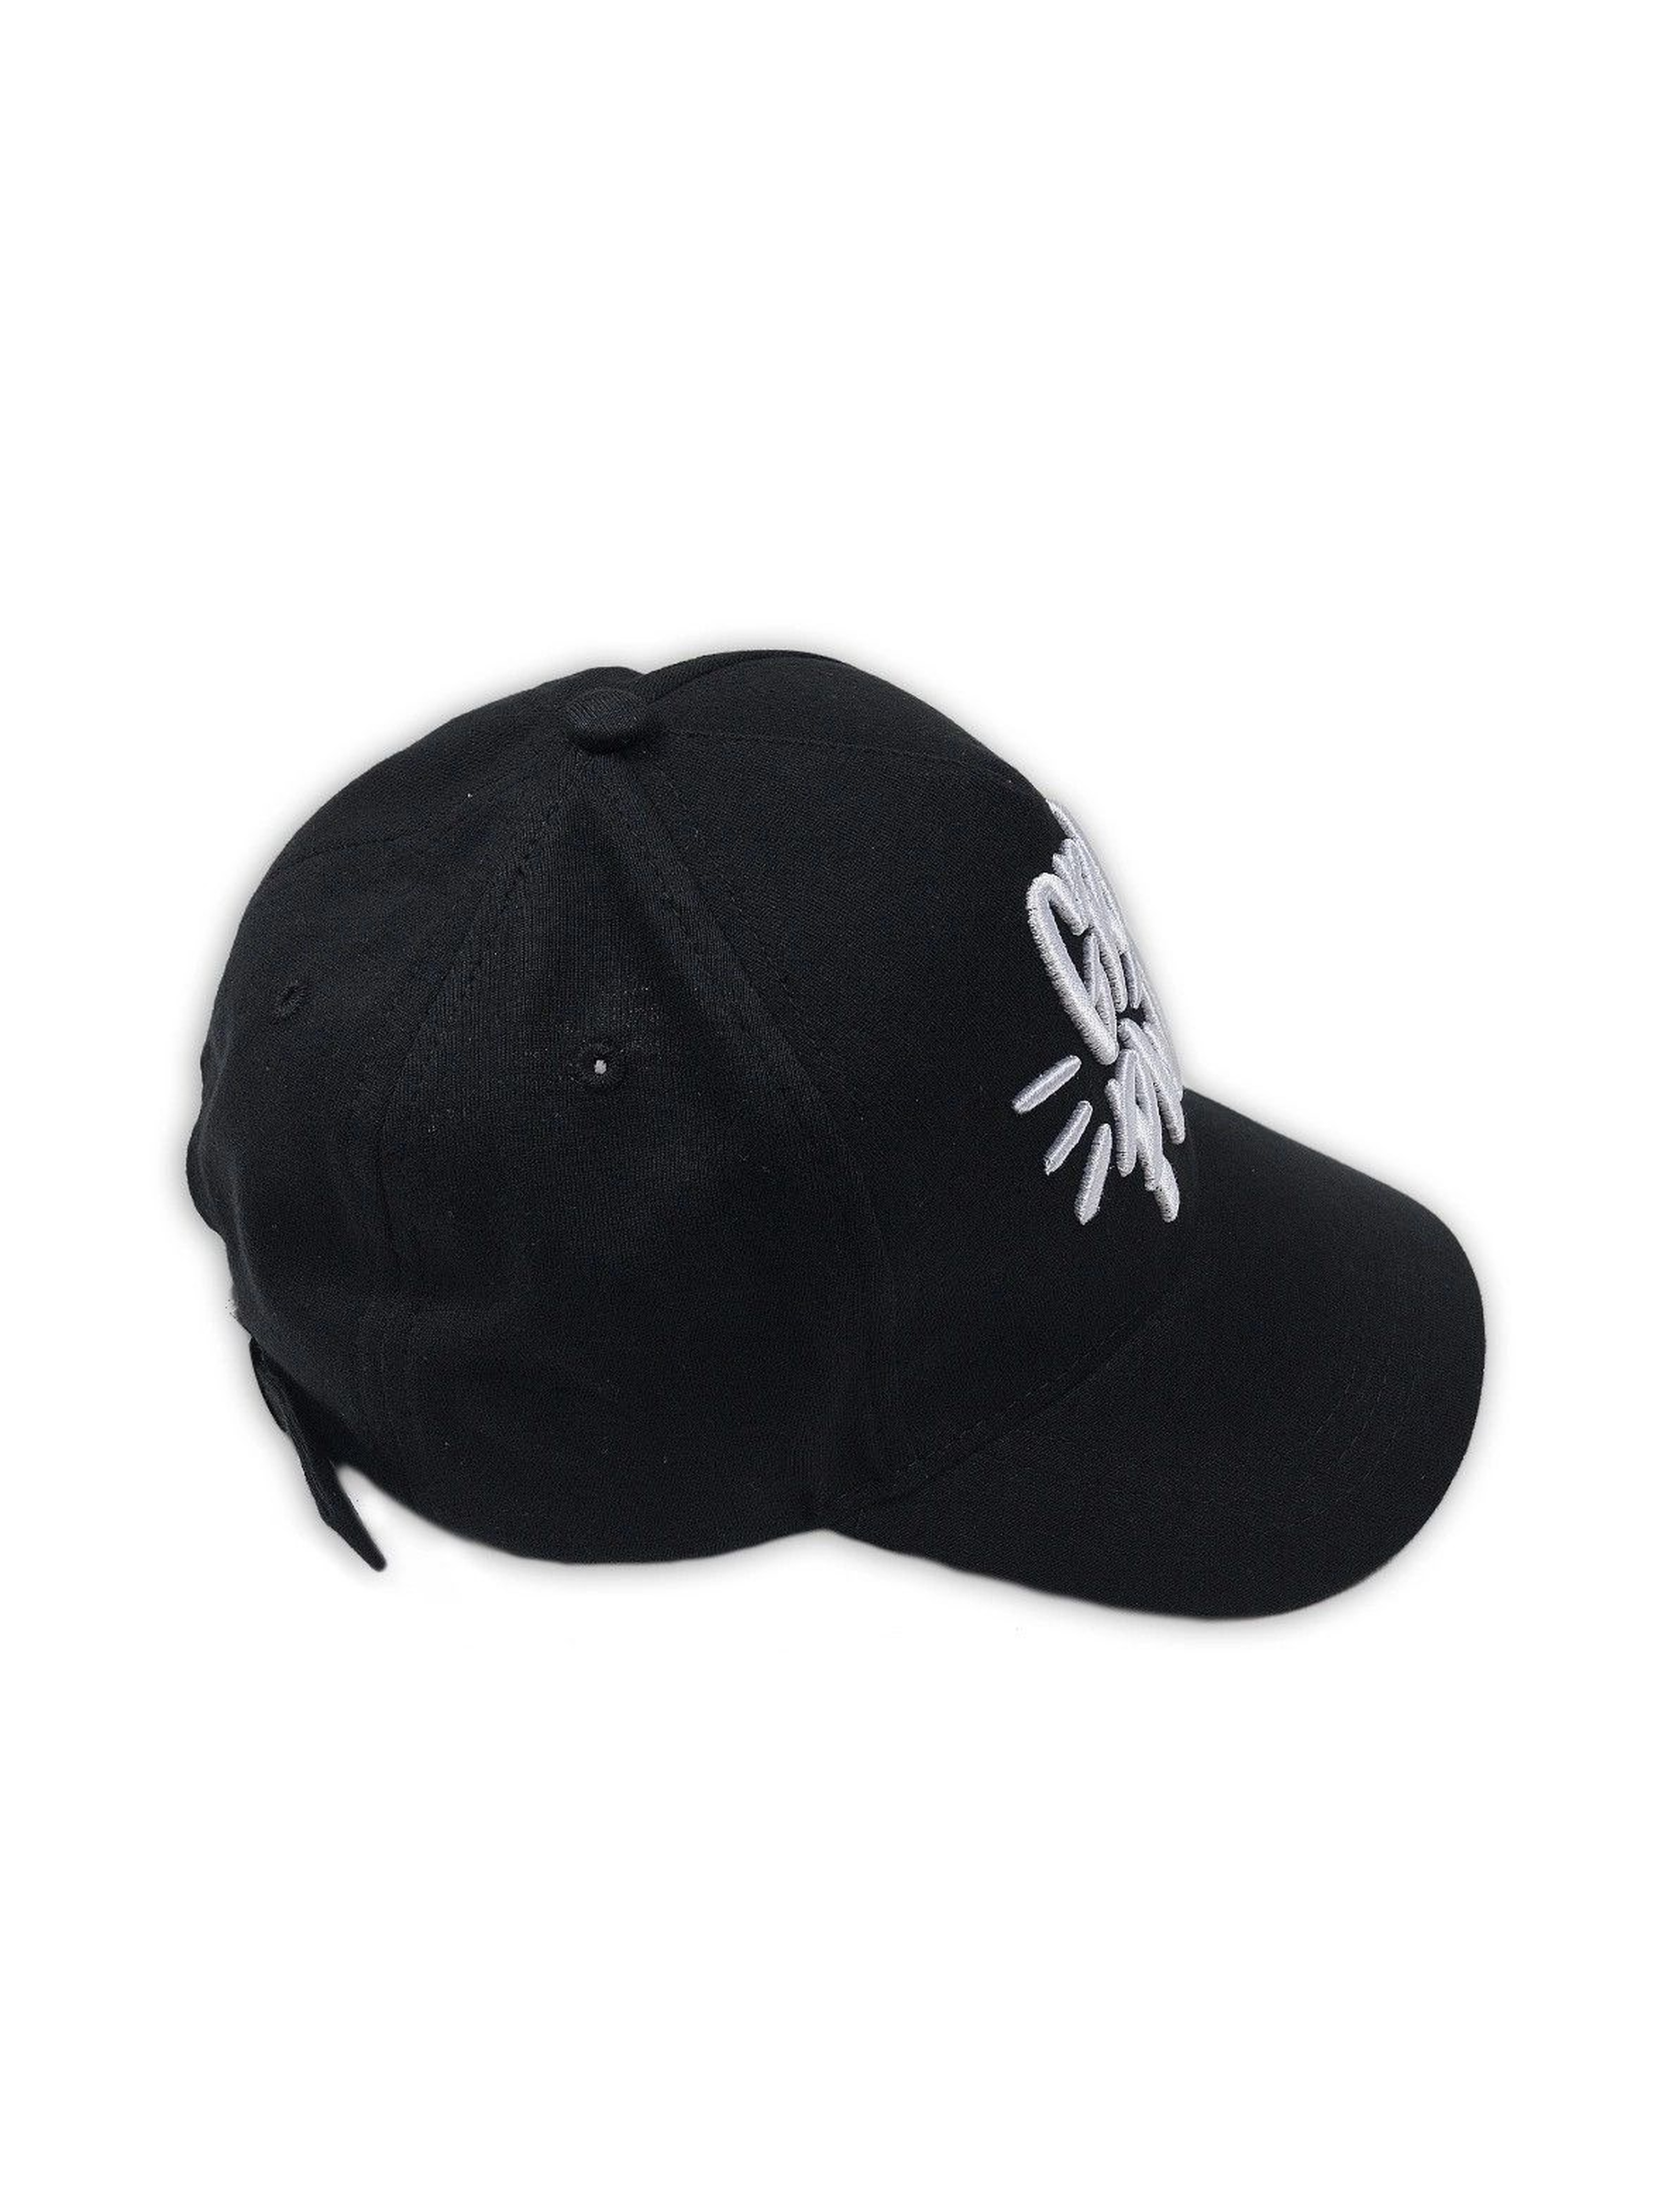 Czarna czapka z daszkiem z napisem Grl Pwr